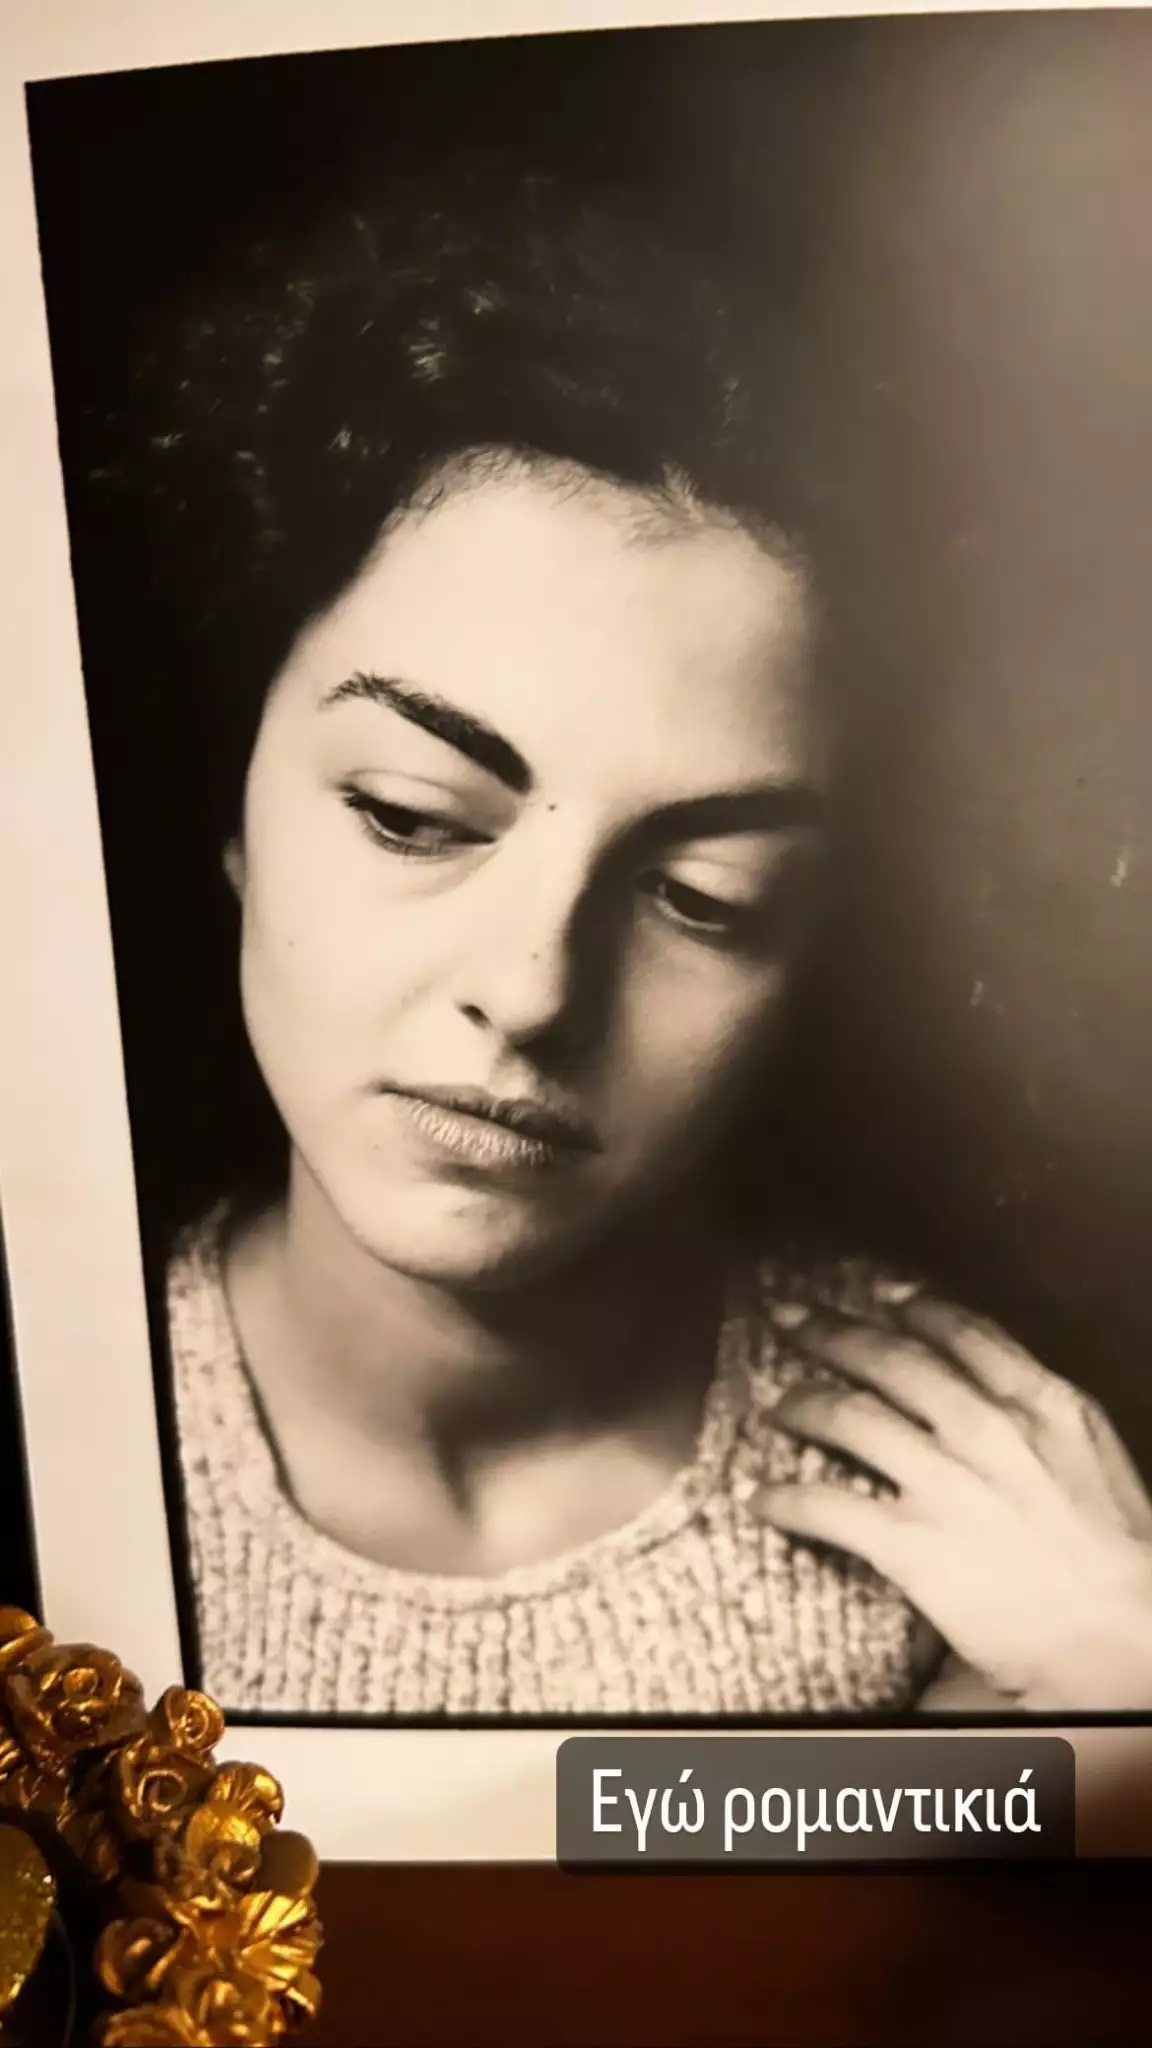 Μαρία Σολωμού: Δημοσίευσε φωτογραφίες από το παρελθόν και το παιδικό της δωμάτιο